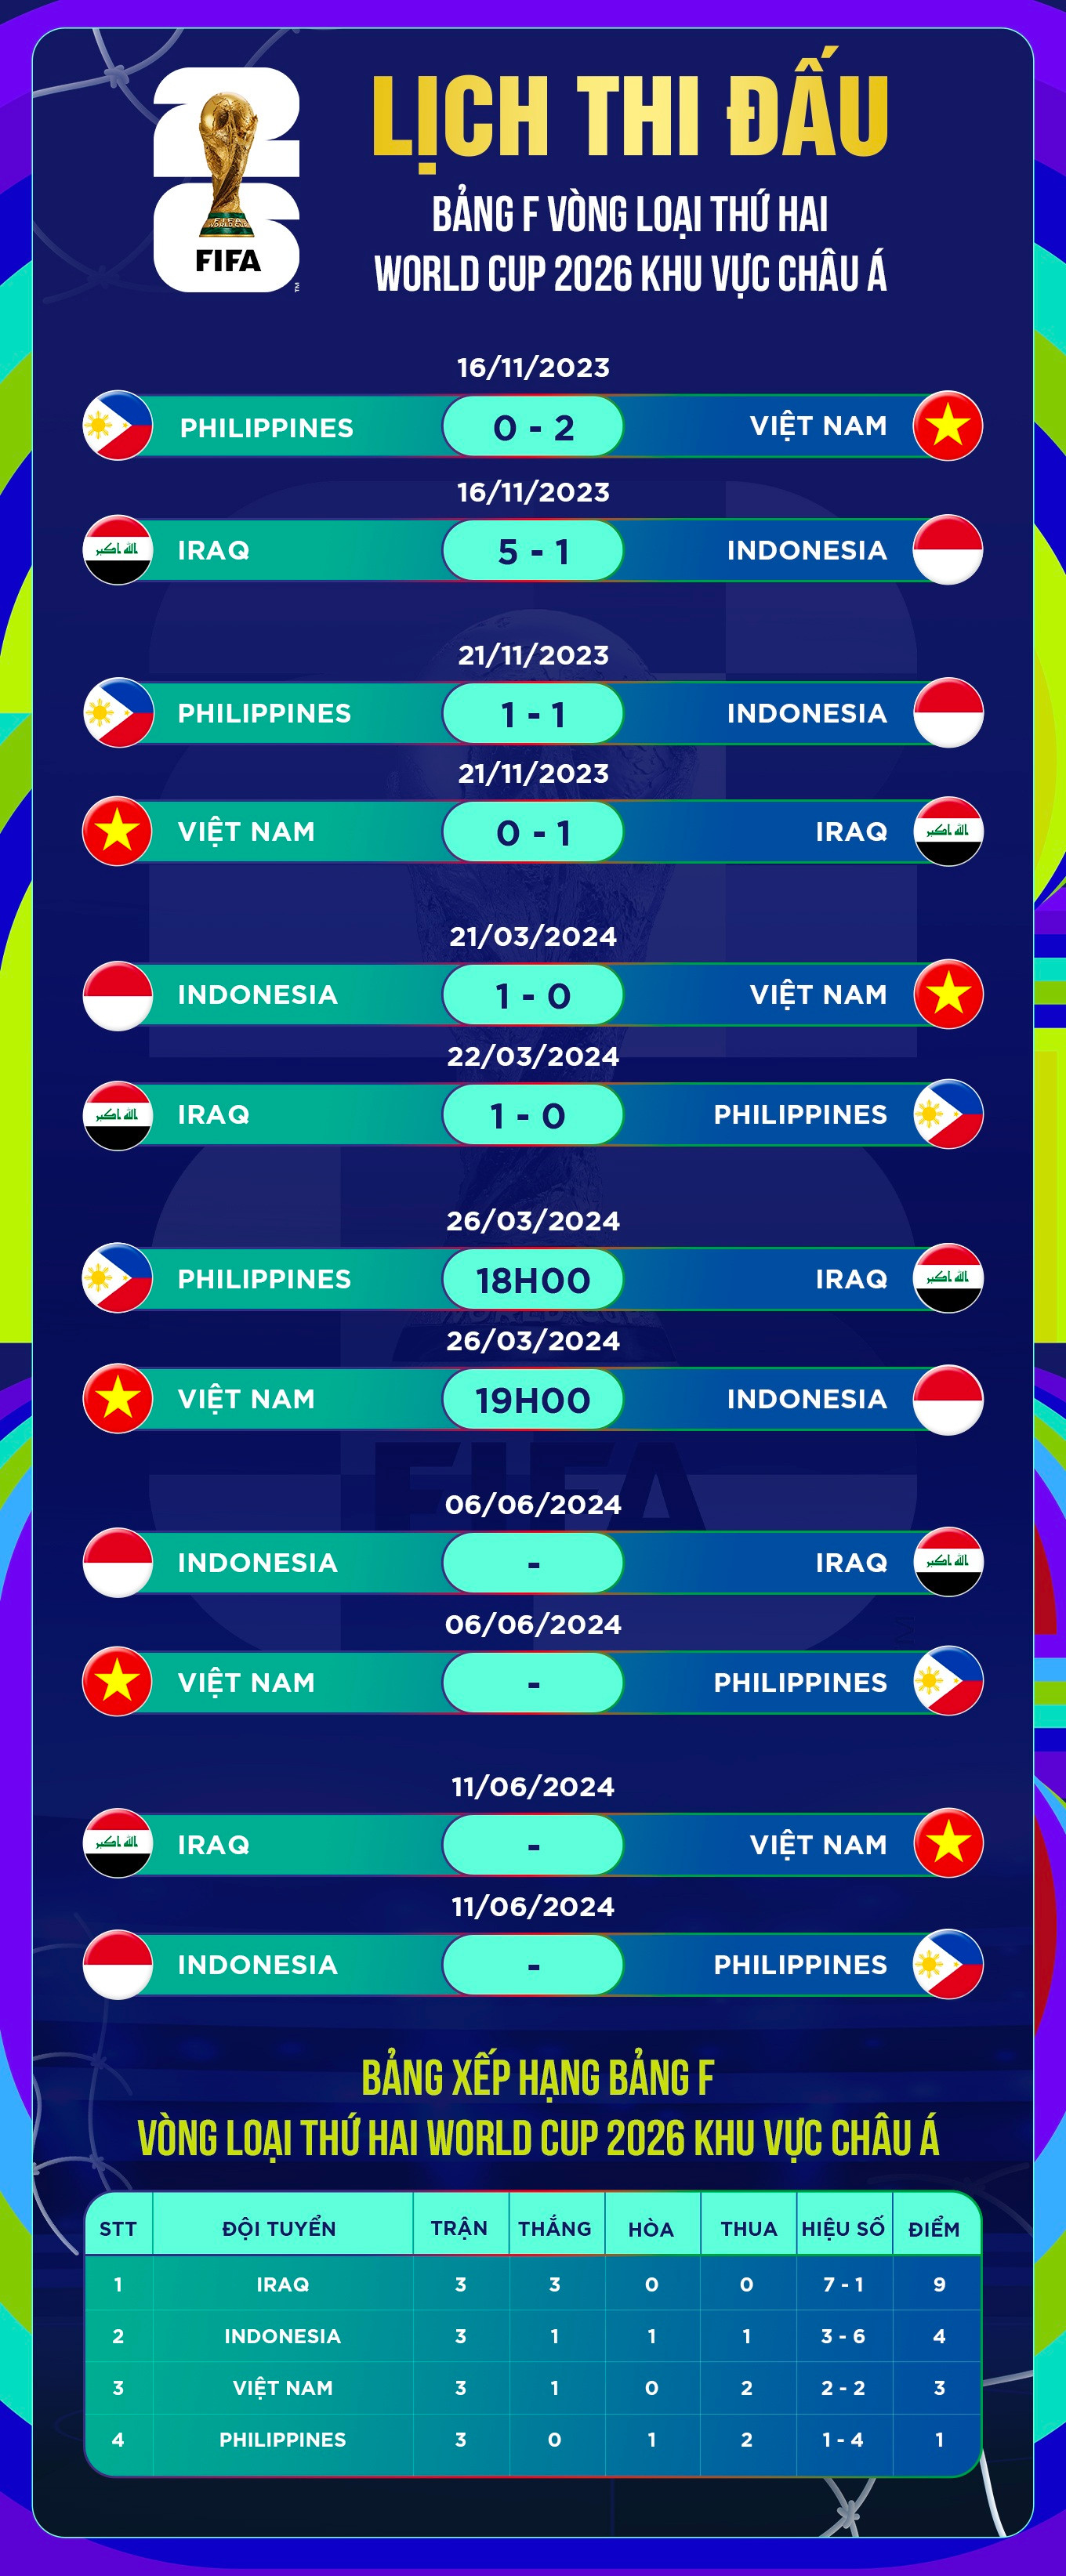 Vé xem trận đội tuyển Việt Nam - Indonesia tại Mỹ Đình ngày 26/3 ế ẩm - 6